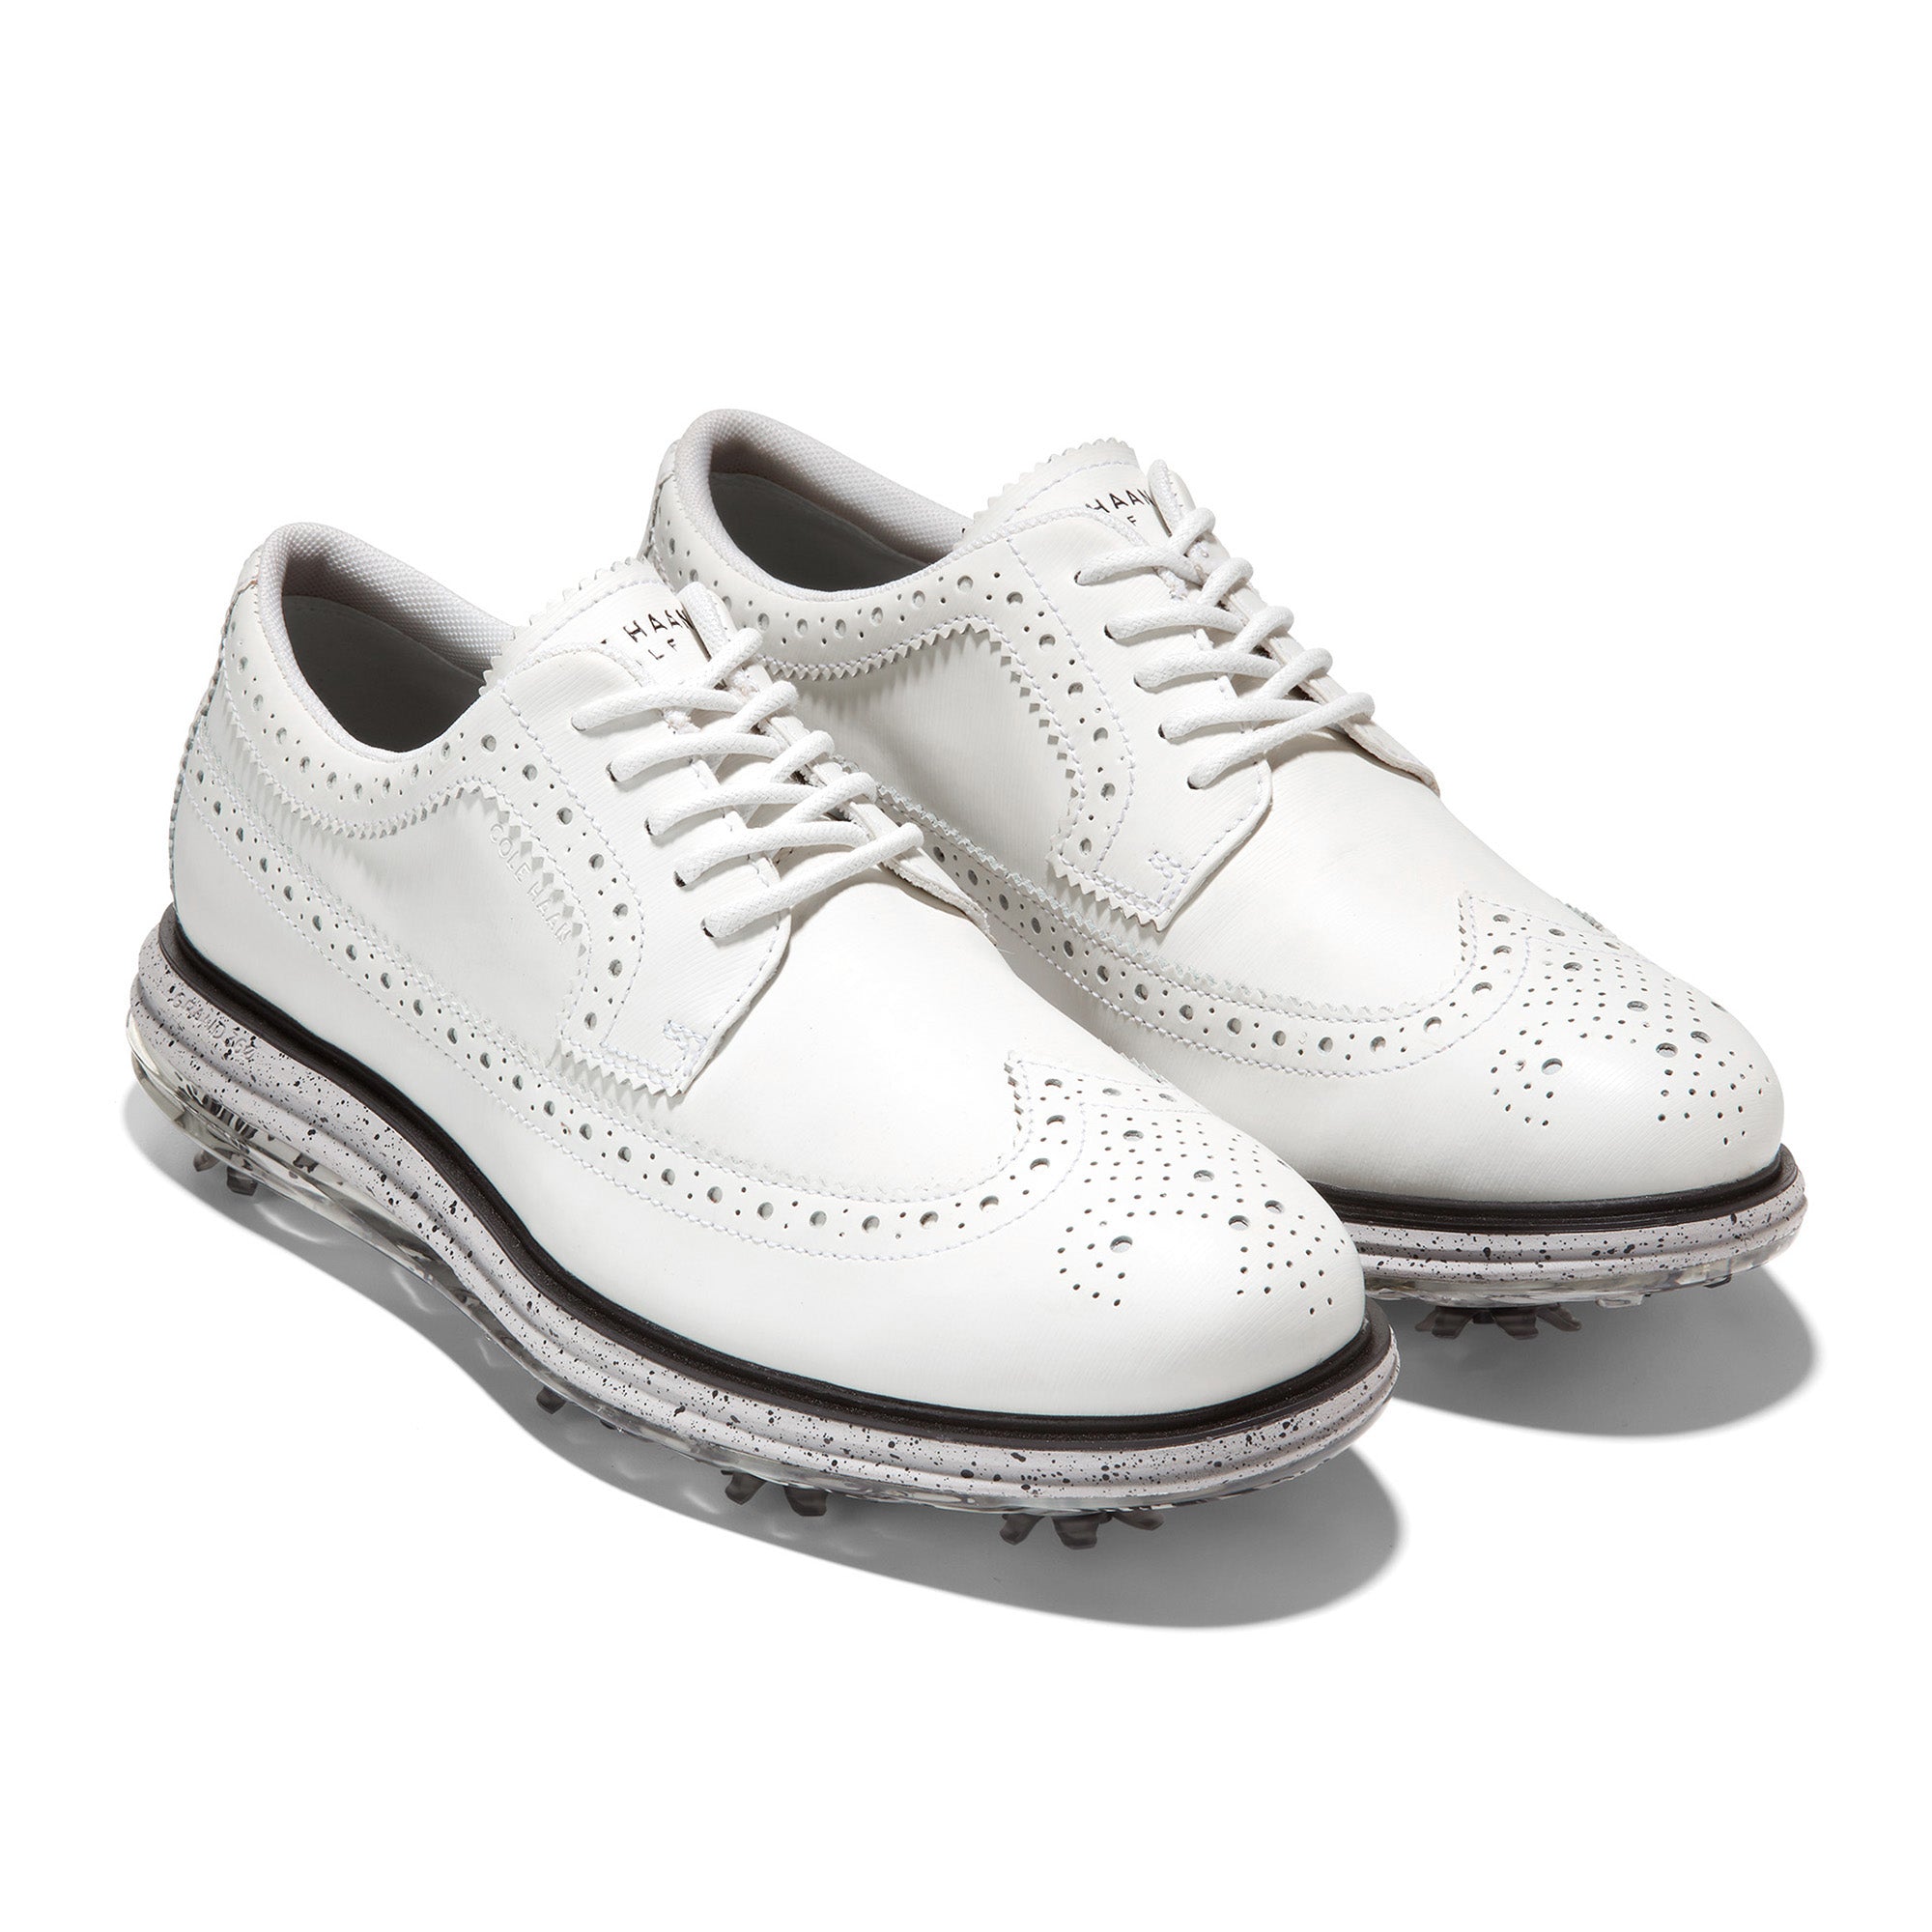 Cole Haan OriginalGrand Tour Golf Shoes C36172 White Harbour Mist Tiger ...